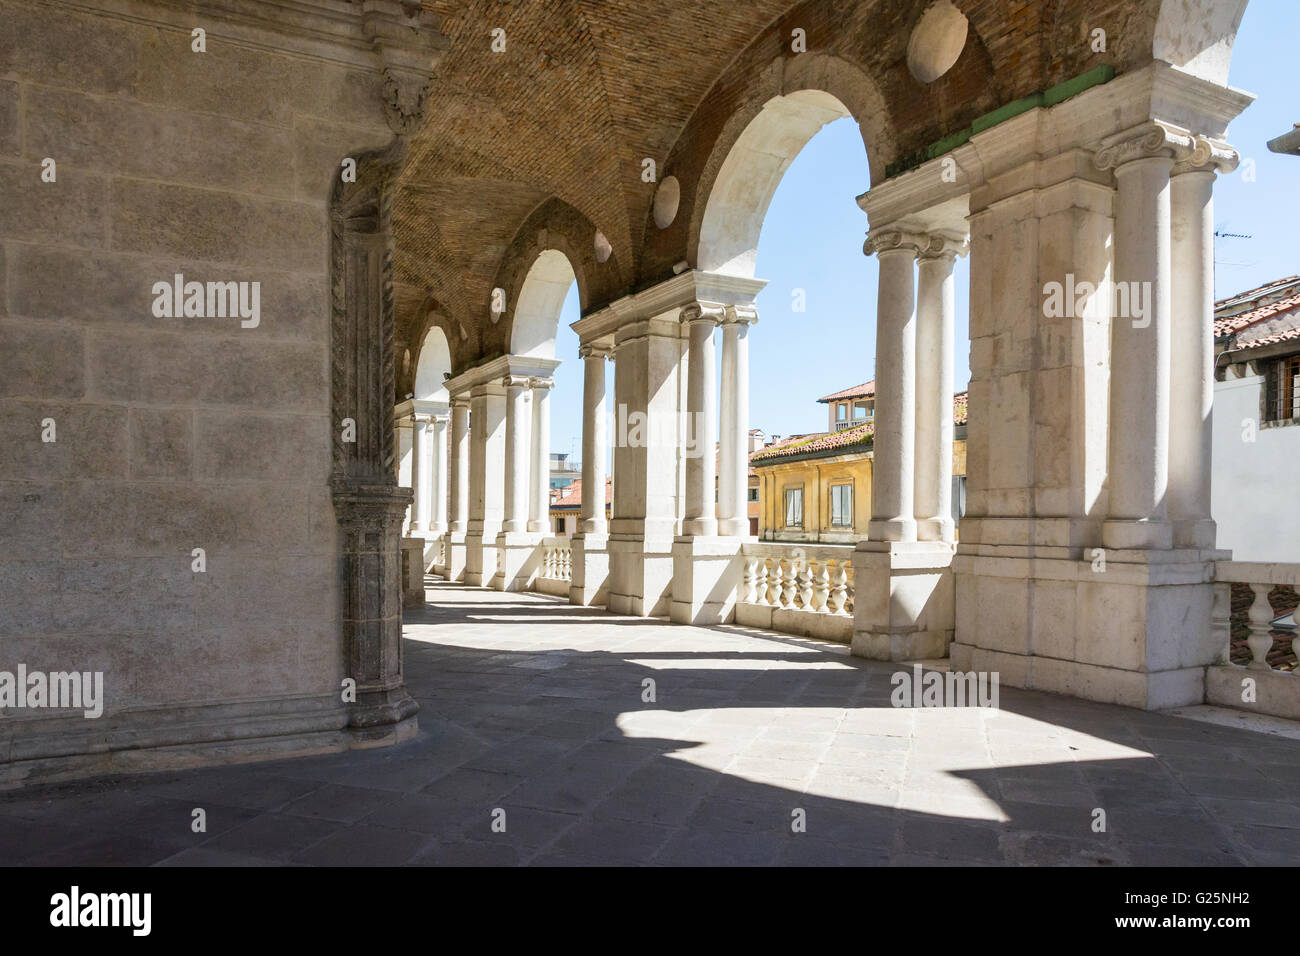 Vicenza,Italy-April 3,2015:vista del famoso colonnato della basilica Palladiana nel centro di Vicenza durante una giornata di sole. Foto Stock